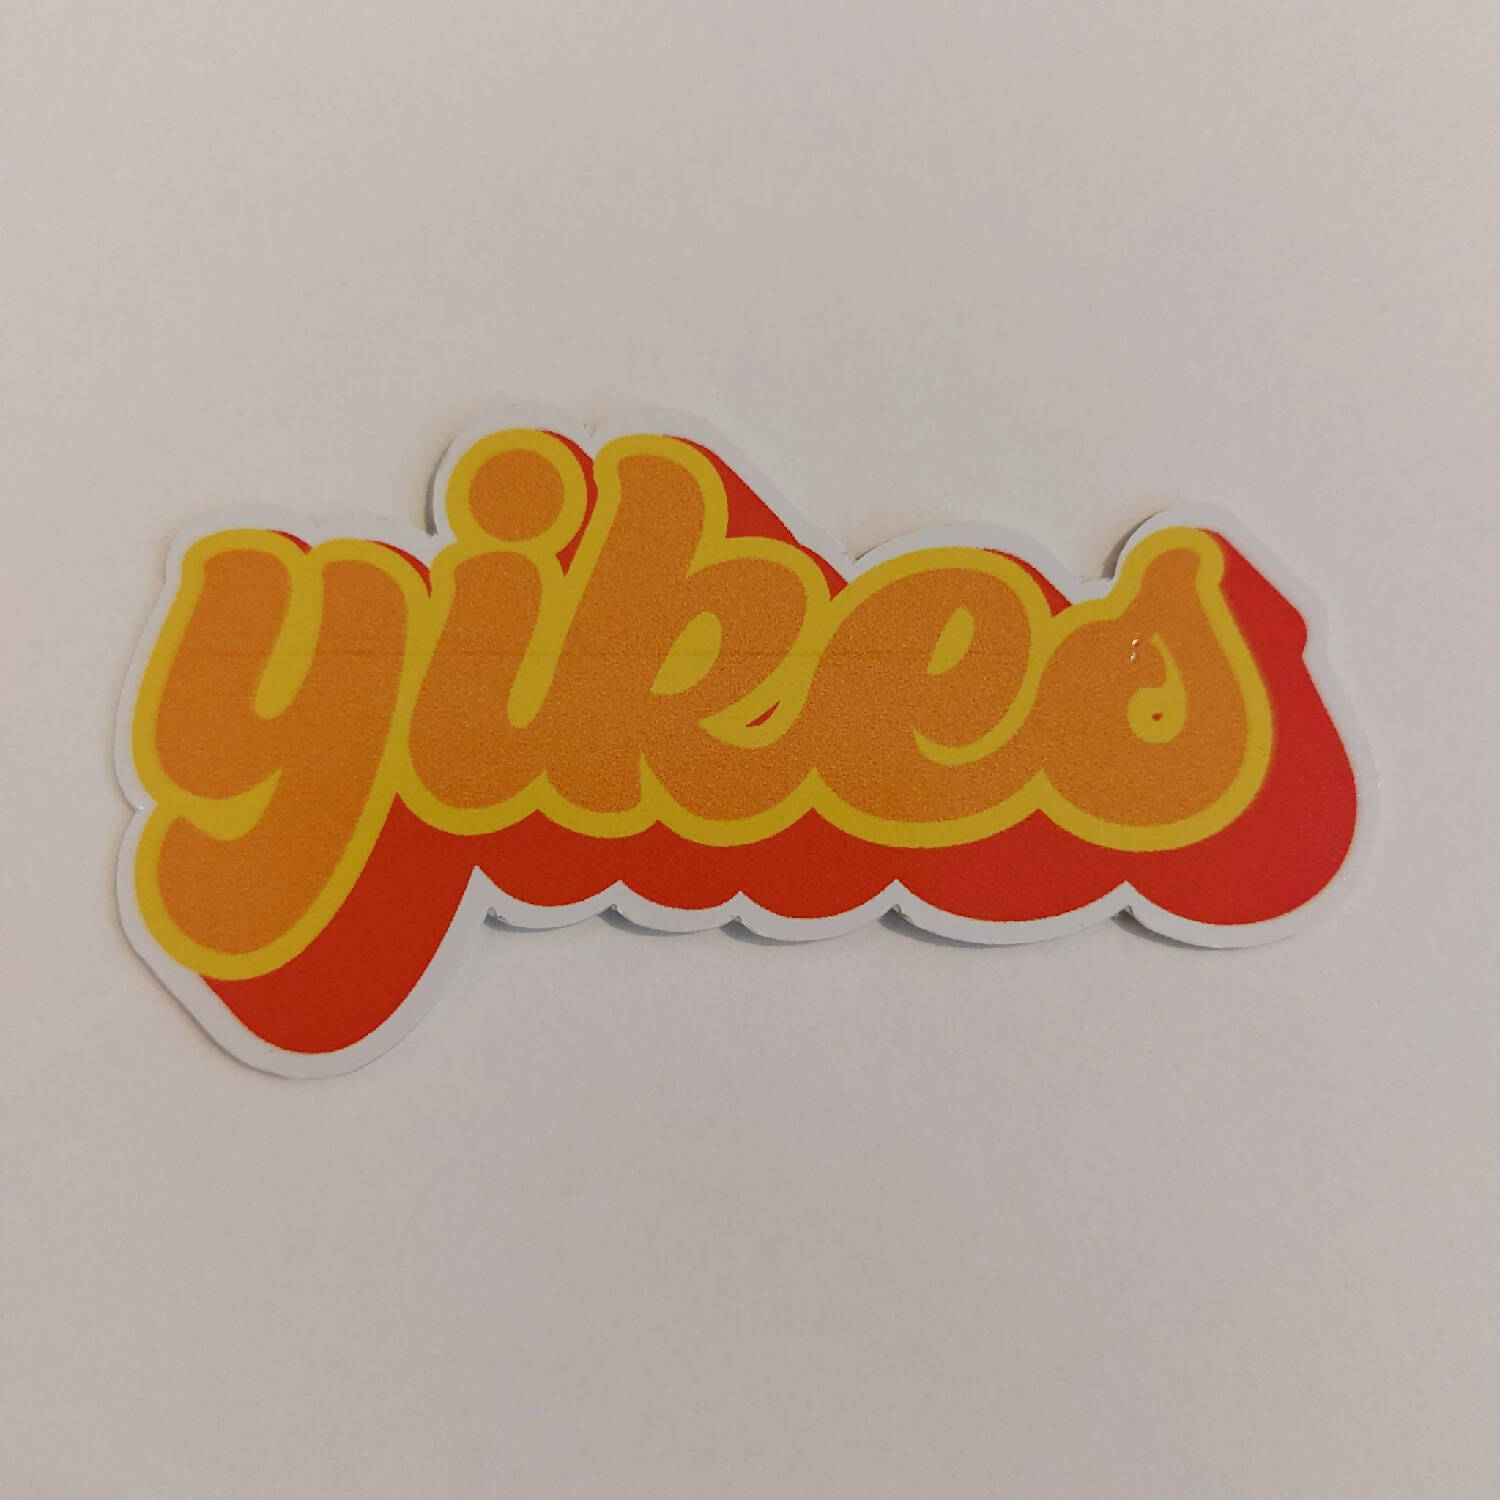 'Yikes' Vinyl Sticker